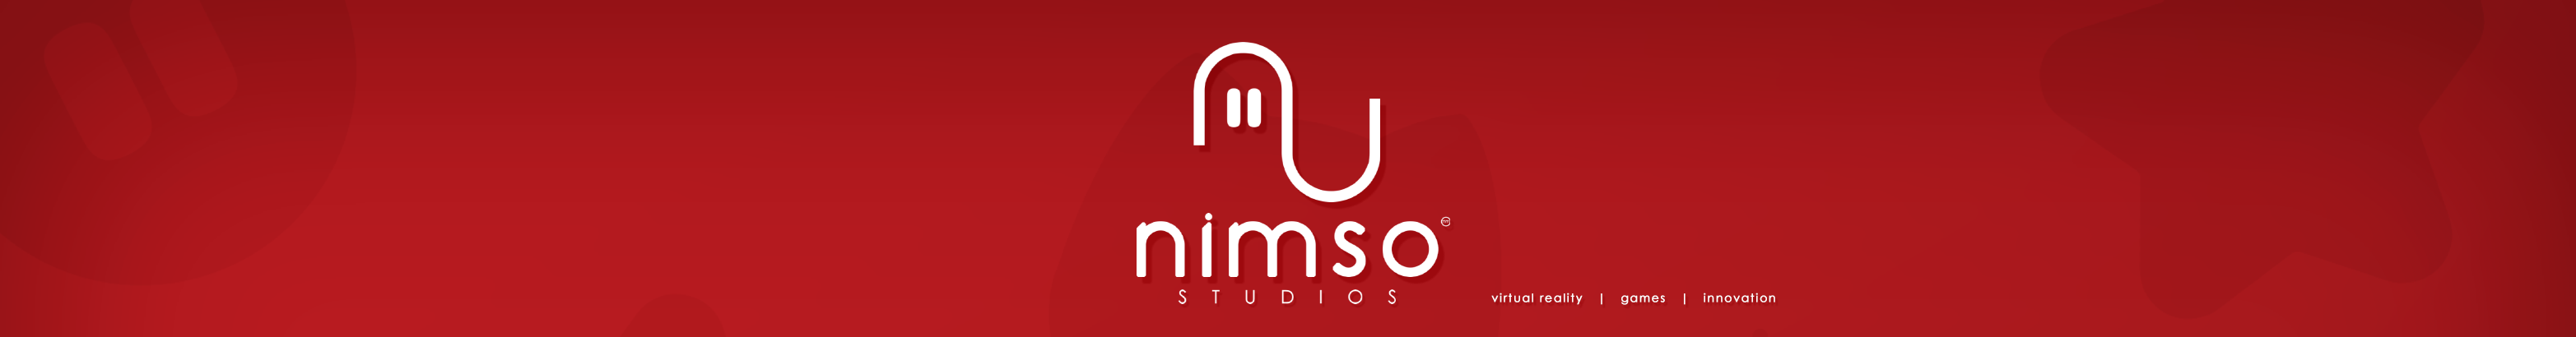 Banner de perfil de Nimso Studios